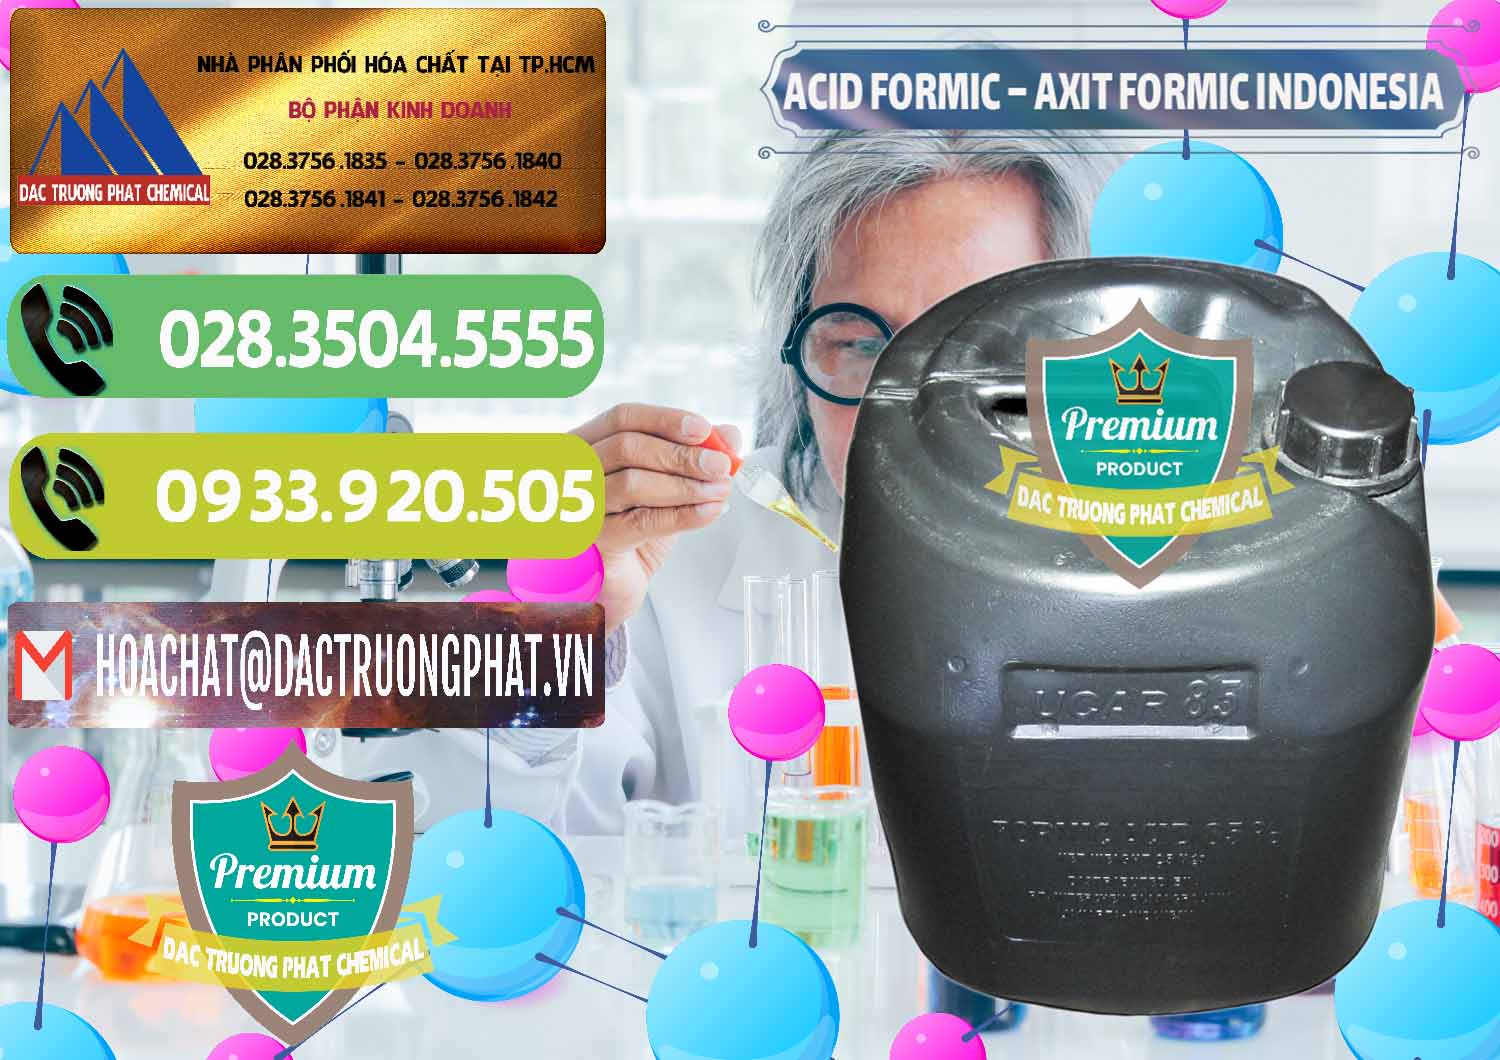 Đơn vị chuyên bán & cung cấp Acid Formic - Axit Formic Indonesia - 0026 - Đơn vị chuyên nhập khẩu ( phân phối ) hóa chất tại TP.HCM - hoachatmientay.vn